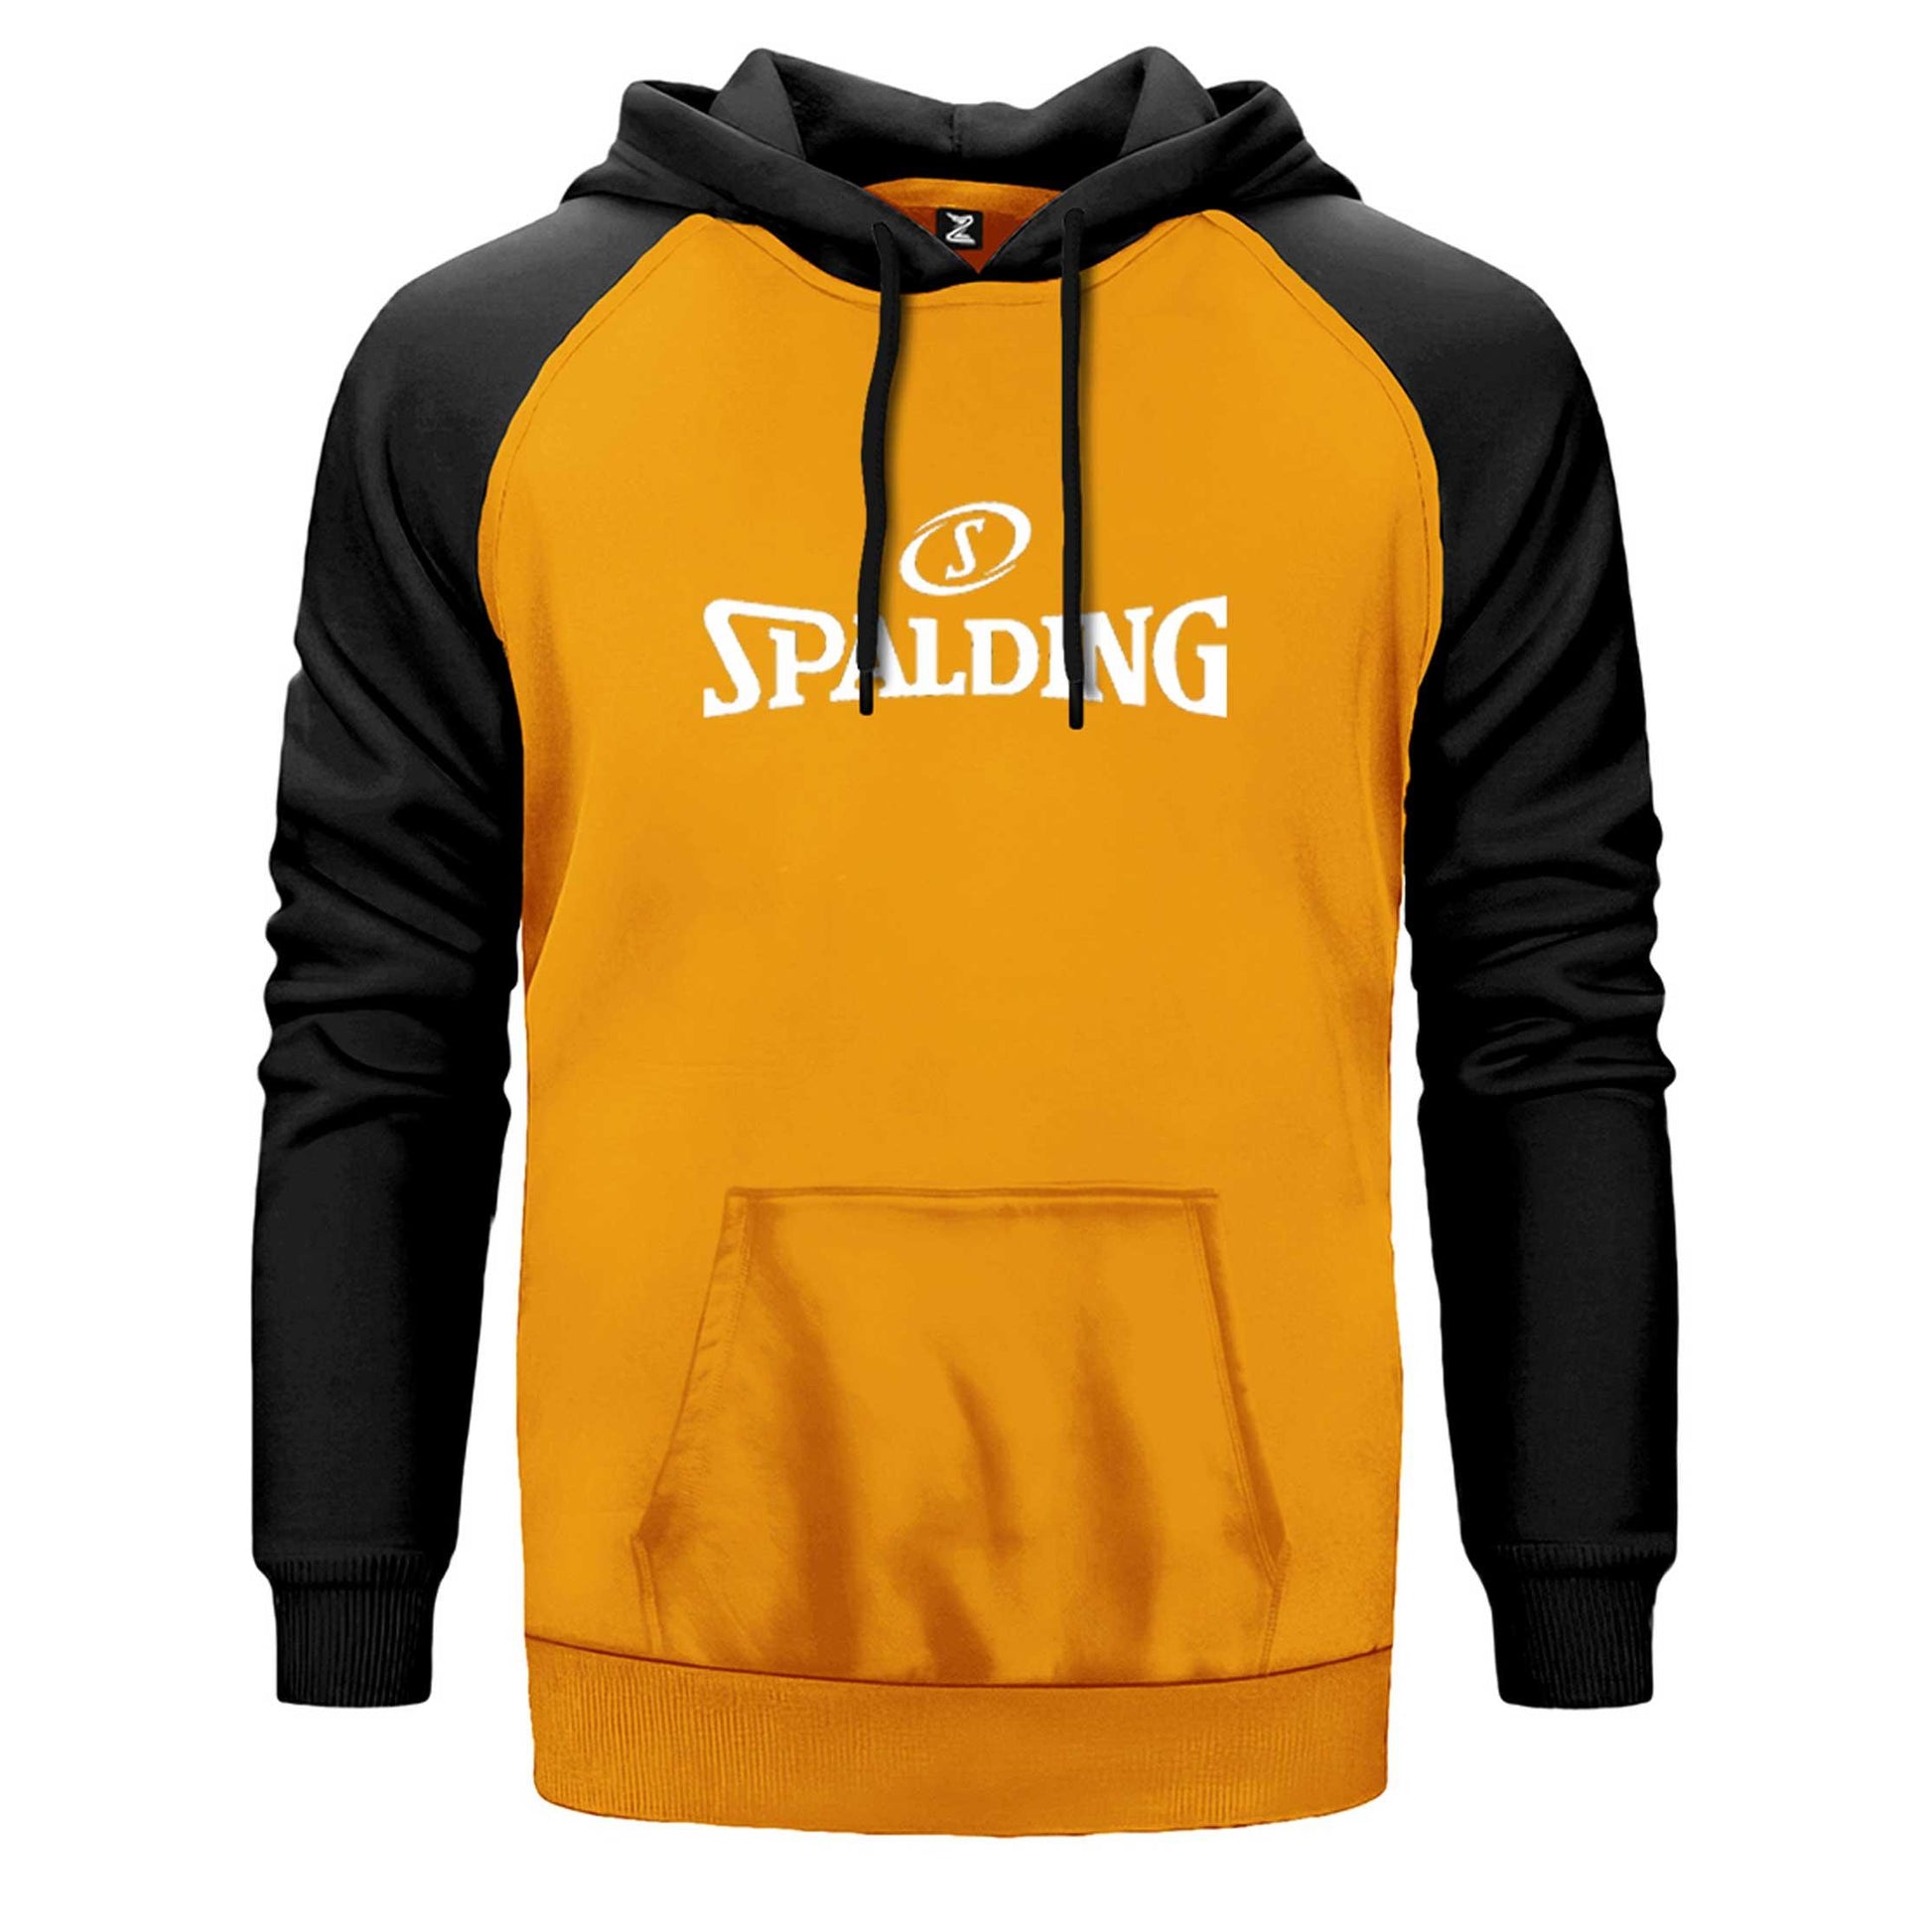 White Spalding Çift Renk Reglan Kol Sweatshirt - Zepplingiyim